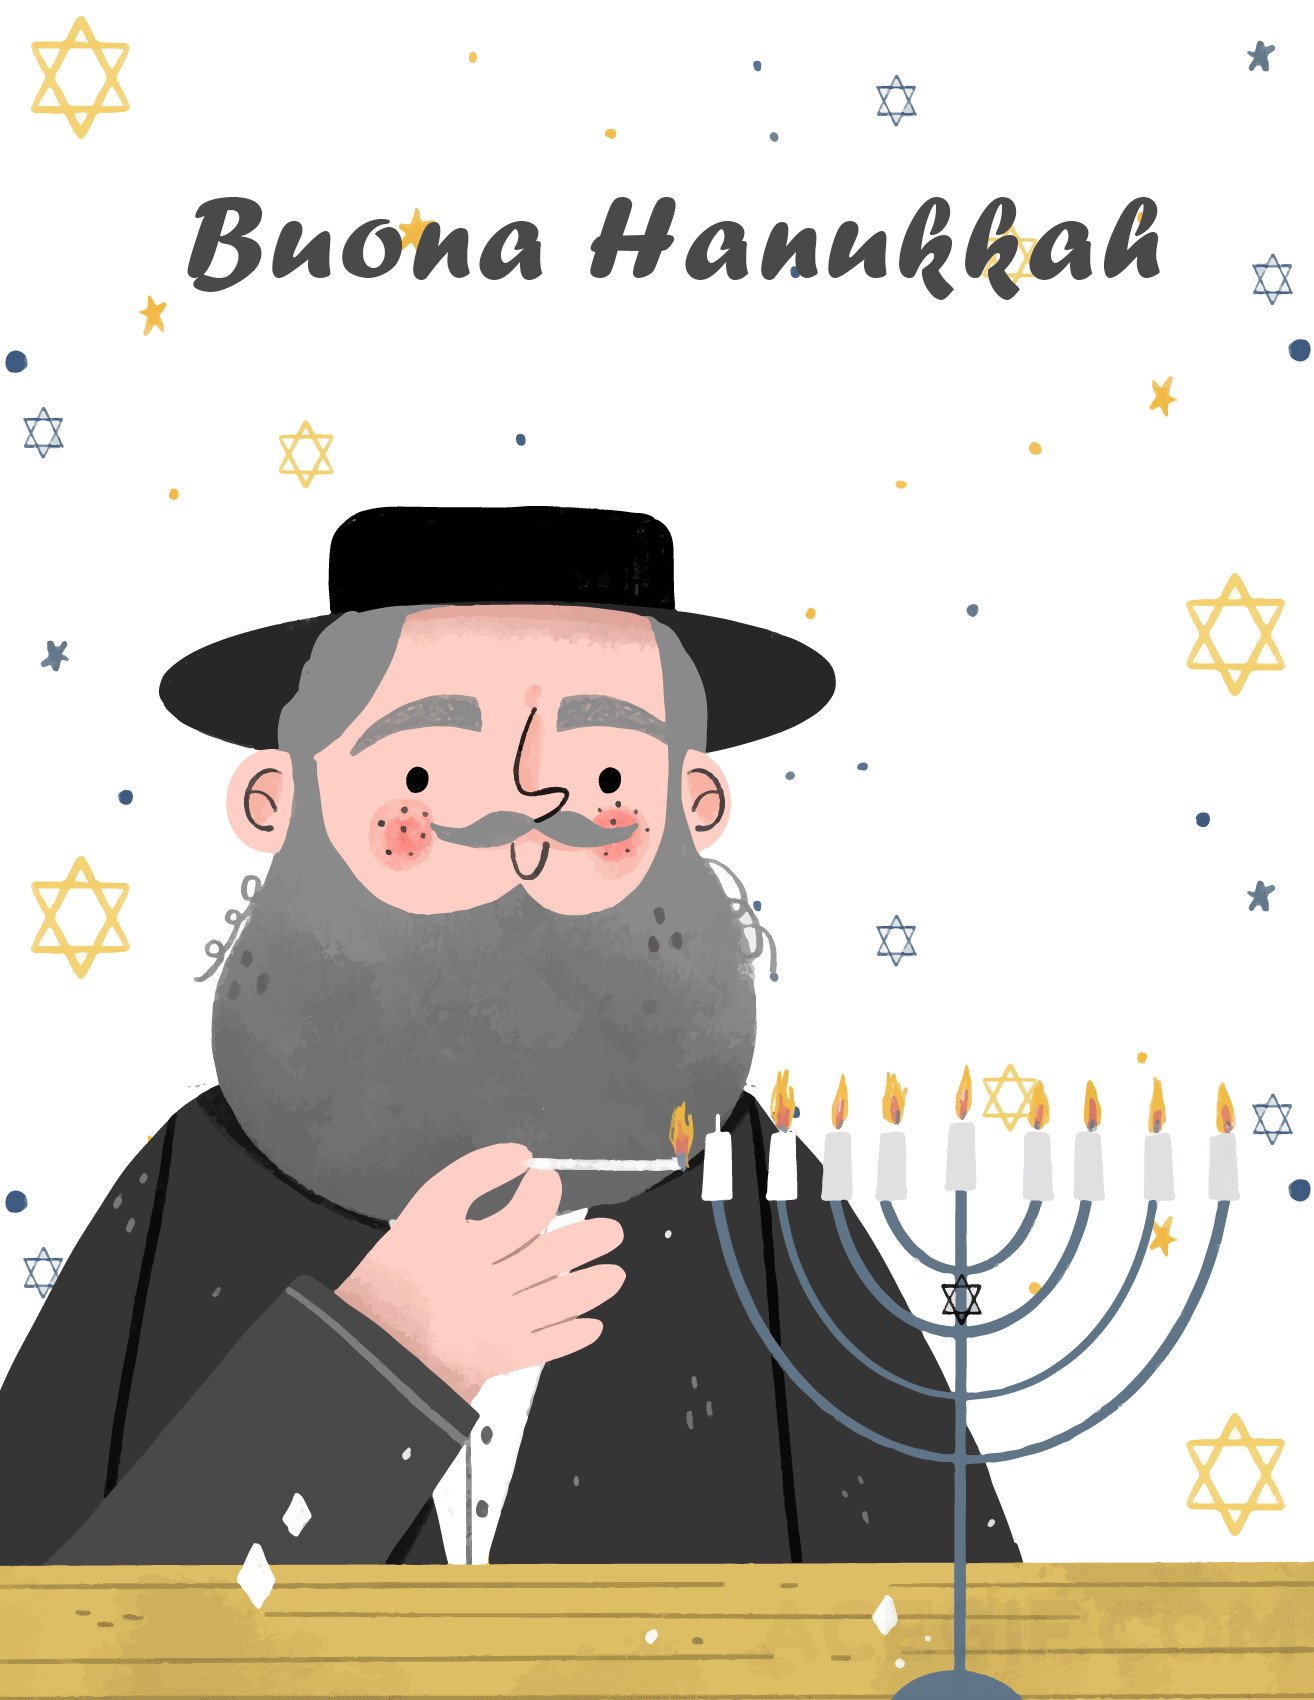 Le GIF di Felice Hanukkah - Cartoline di auguri unici gratuitamente